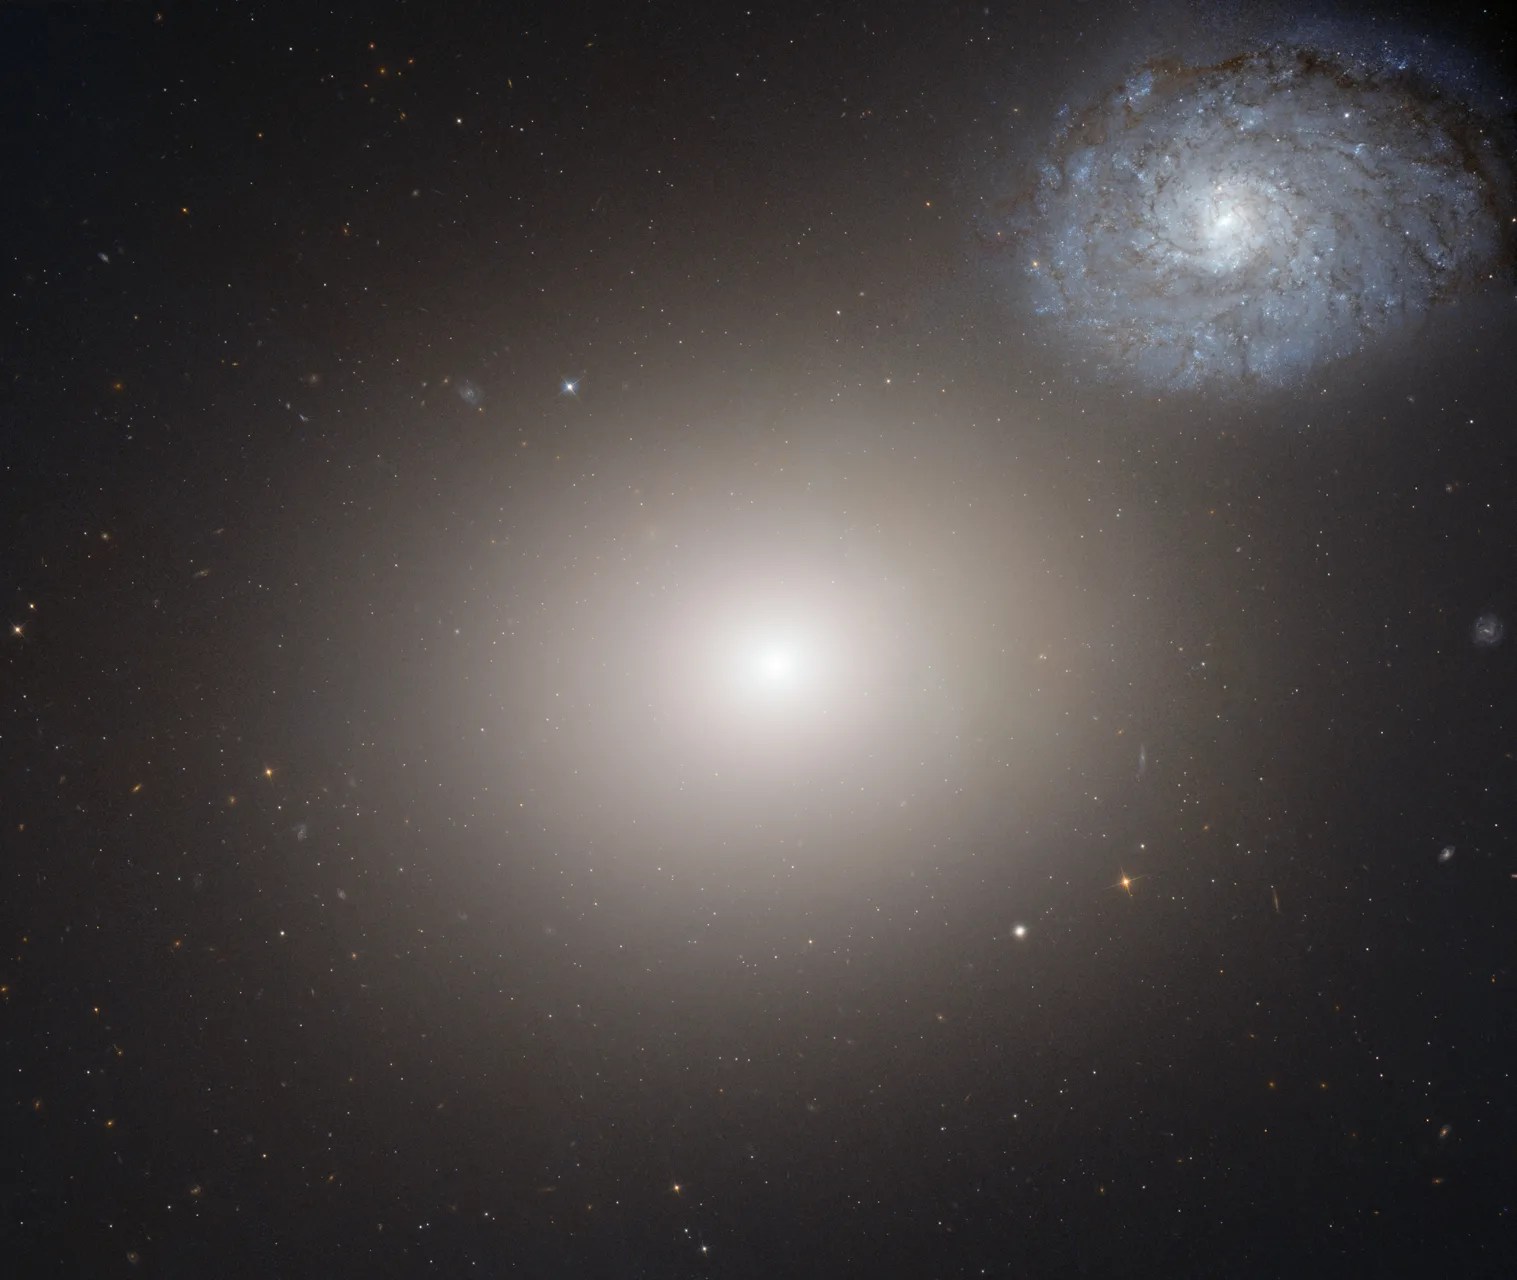 galaxy pair Arp 116